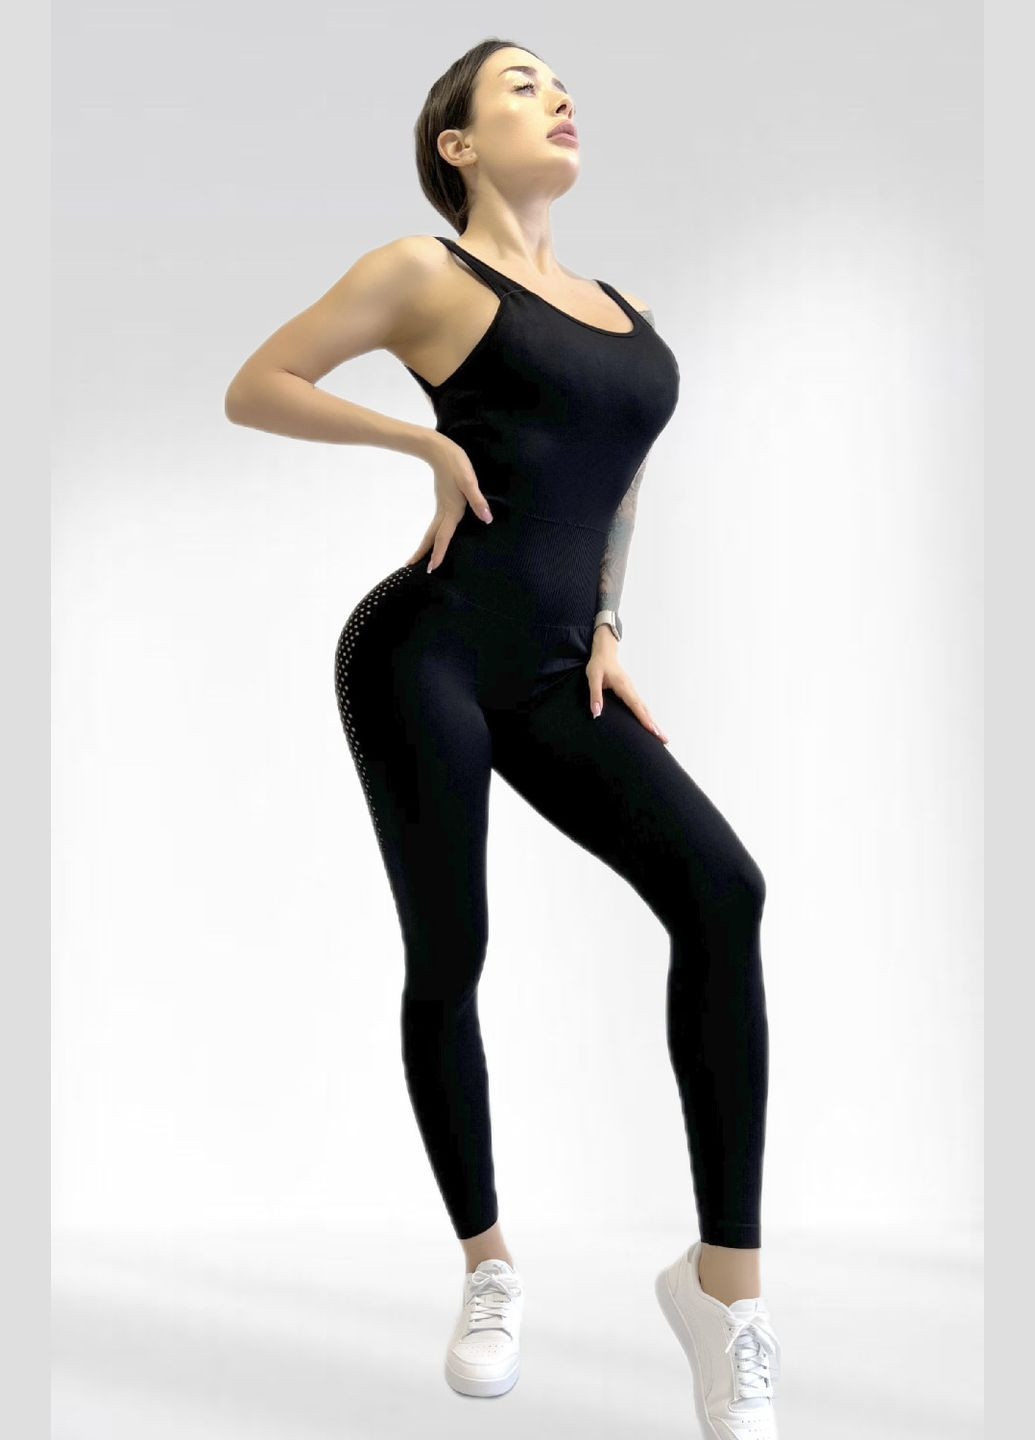 Спортивный комбинезон женский для гимнастики йоги фитнеса LILAFIT комбинезон-брюки чёрный спортивный нейлон